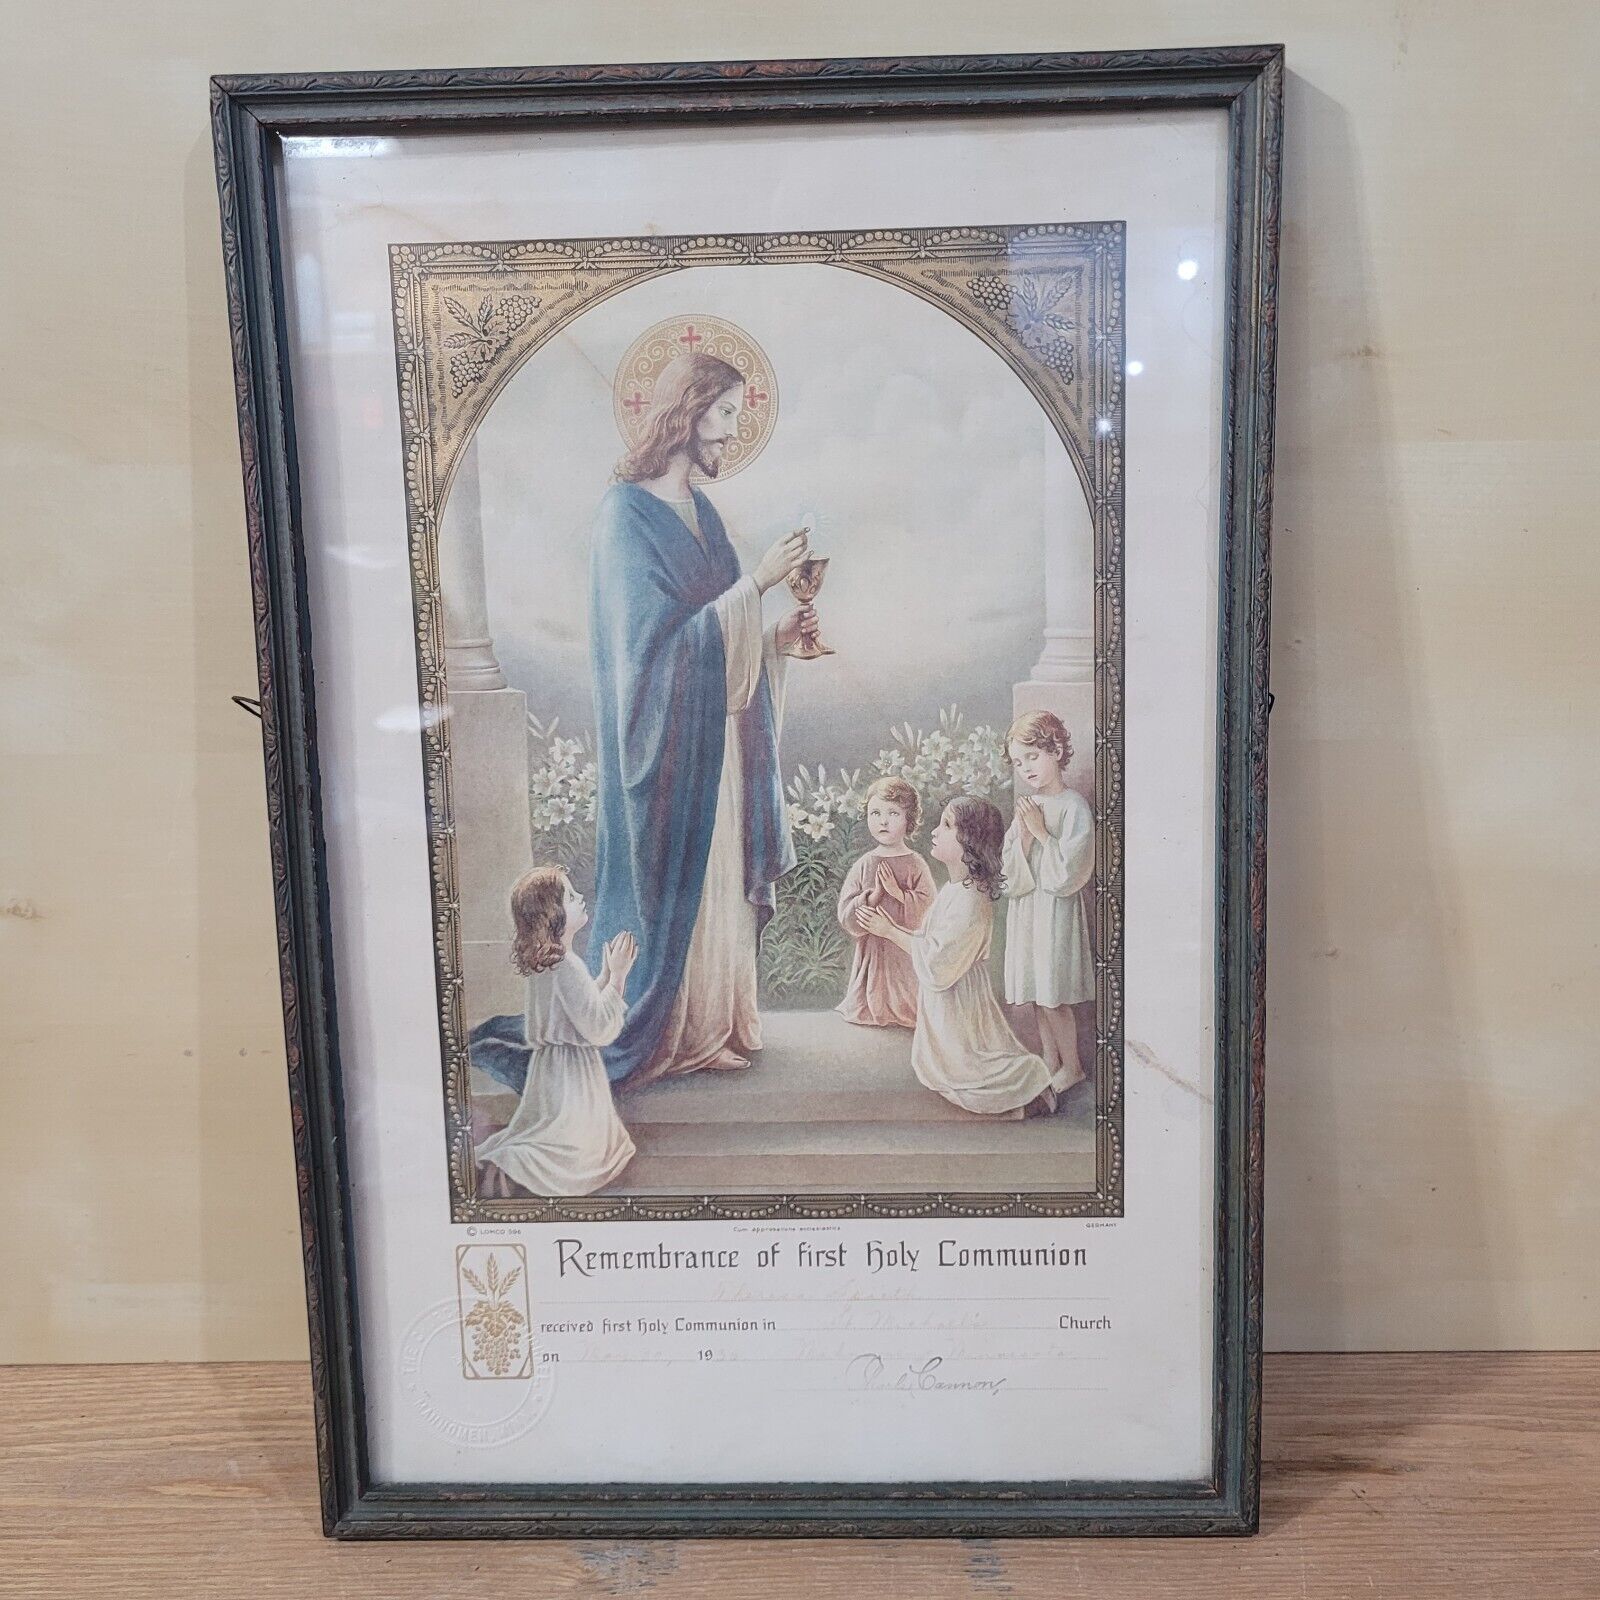 Vtg Remembrance Of First Holy Communion Framed Certificate 1935 Mahnomen MN Seal